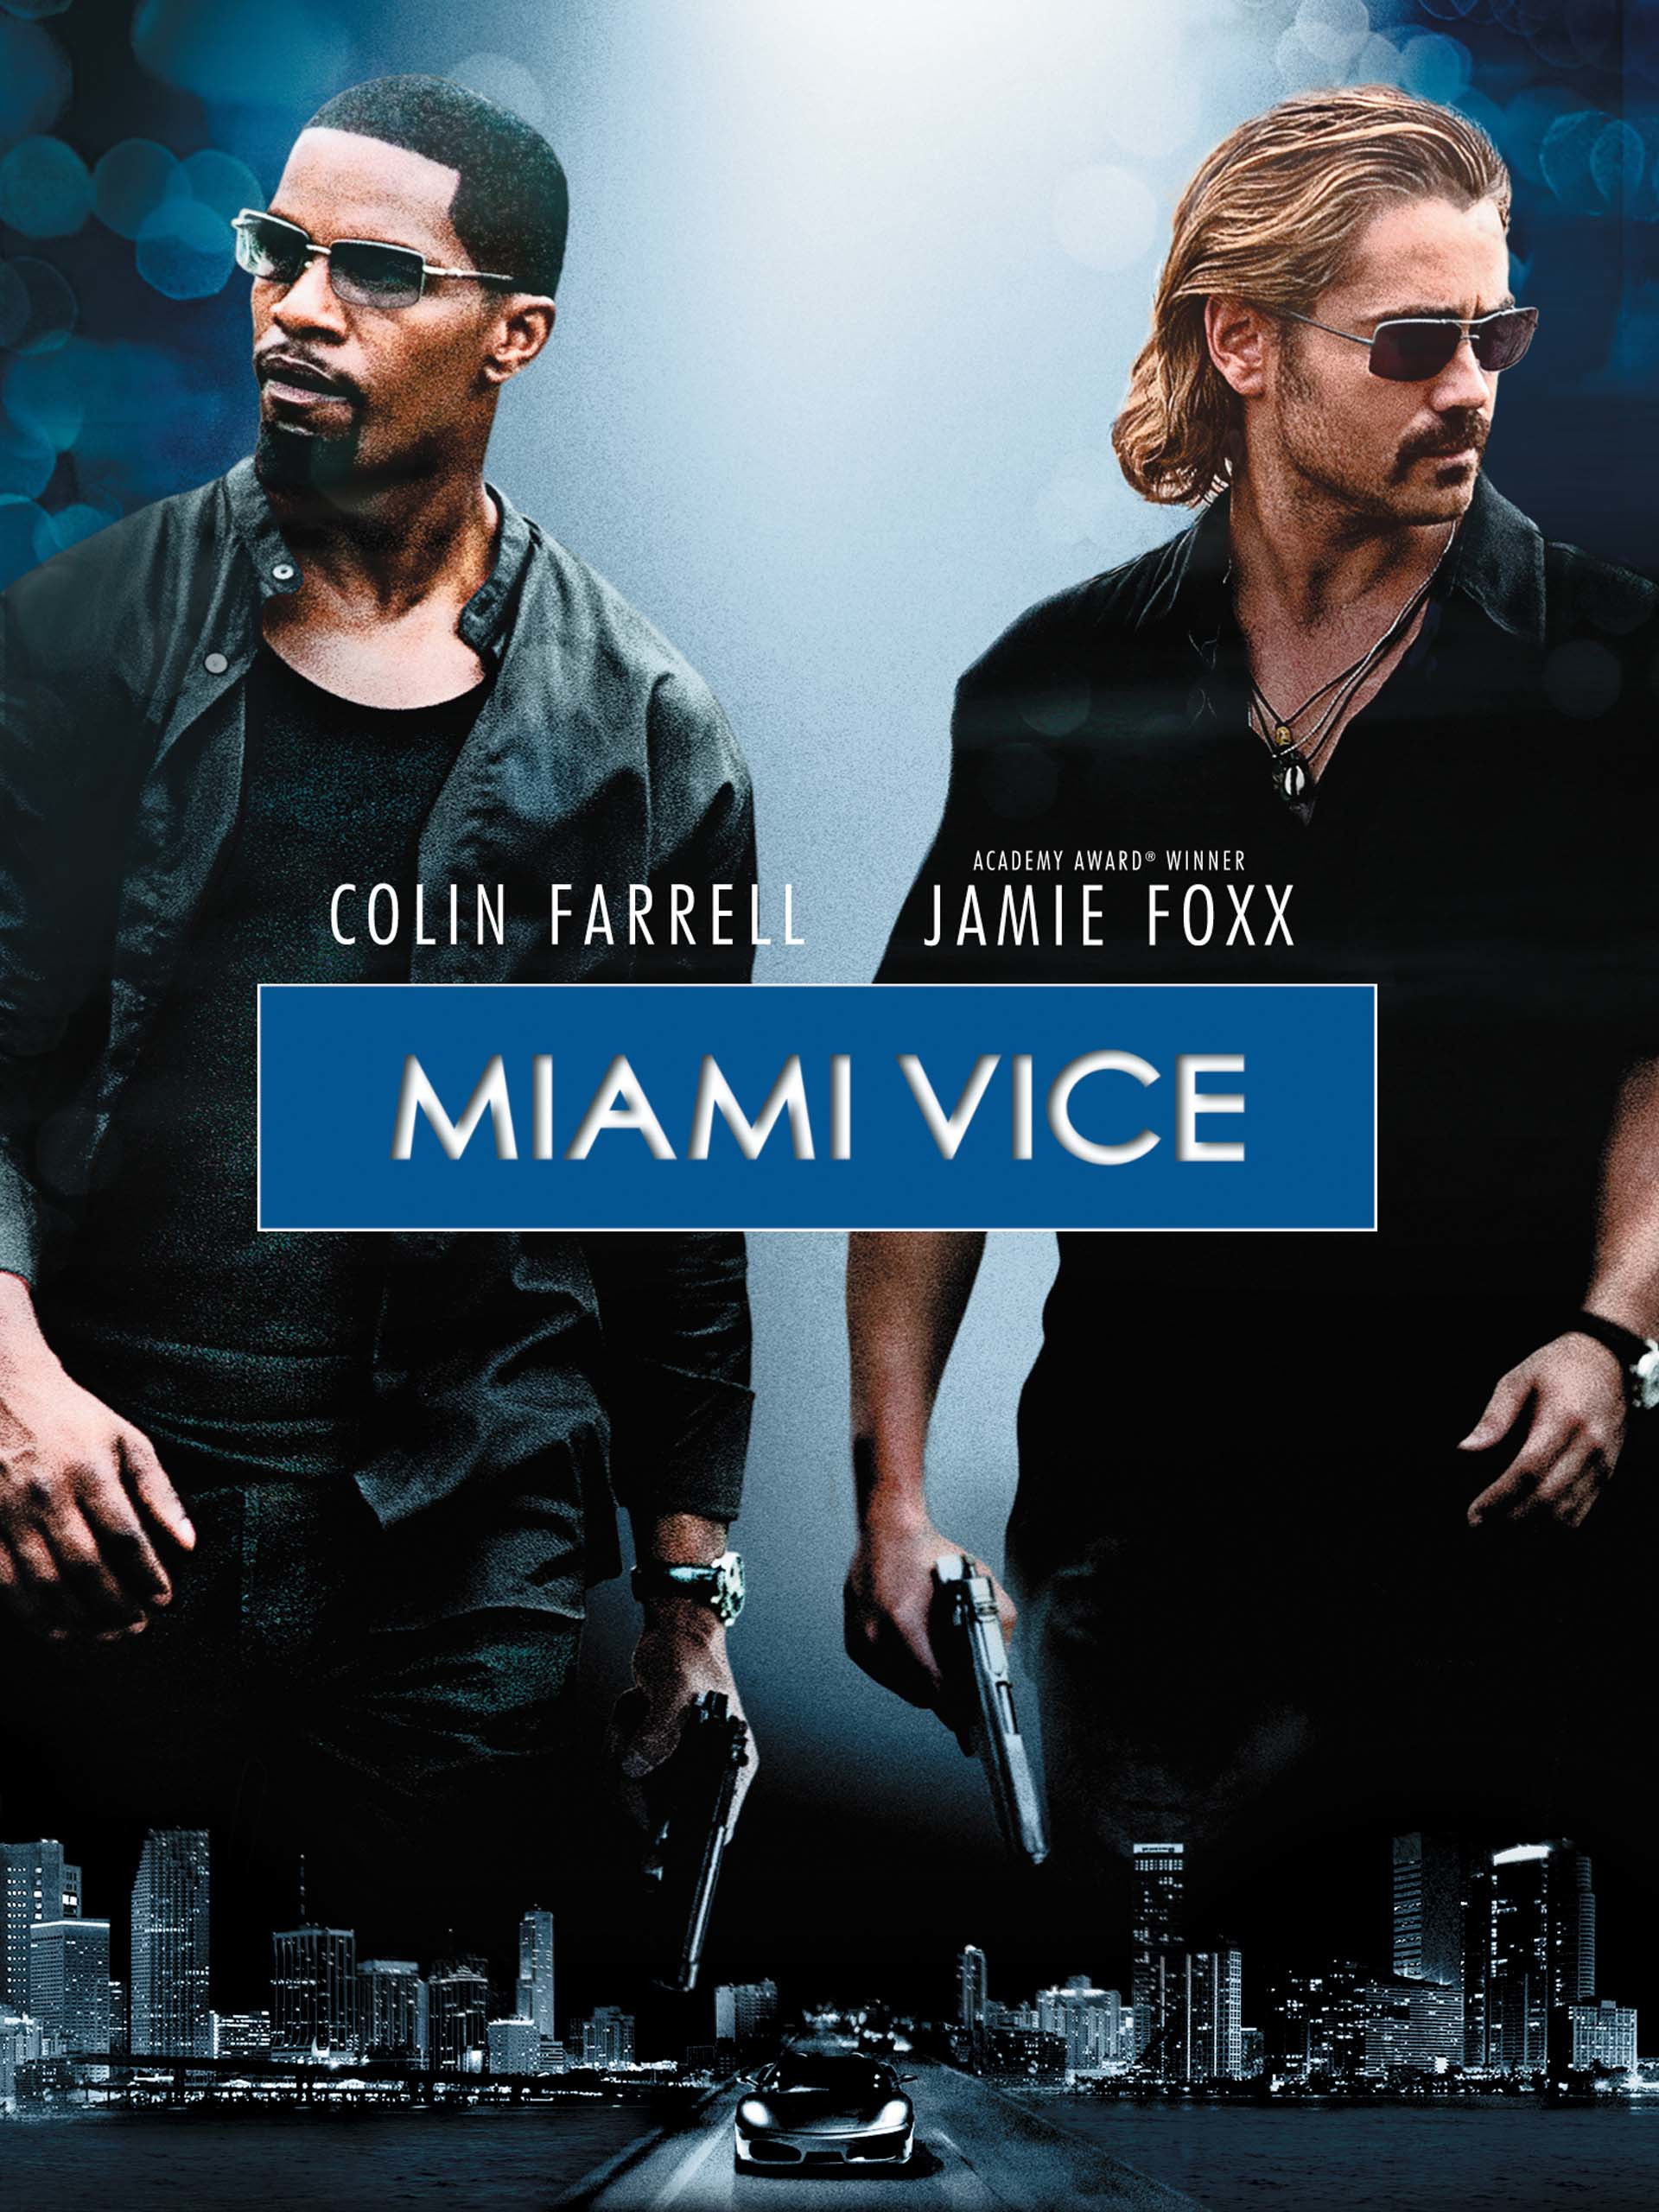 ดูหนังออนไลน์ฟรี ดูหนังออนไลน์ Miami Vice 2006 ไมอามี่ ไวซ์ คู่เดือดไมอามี่ 037hdmovie